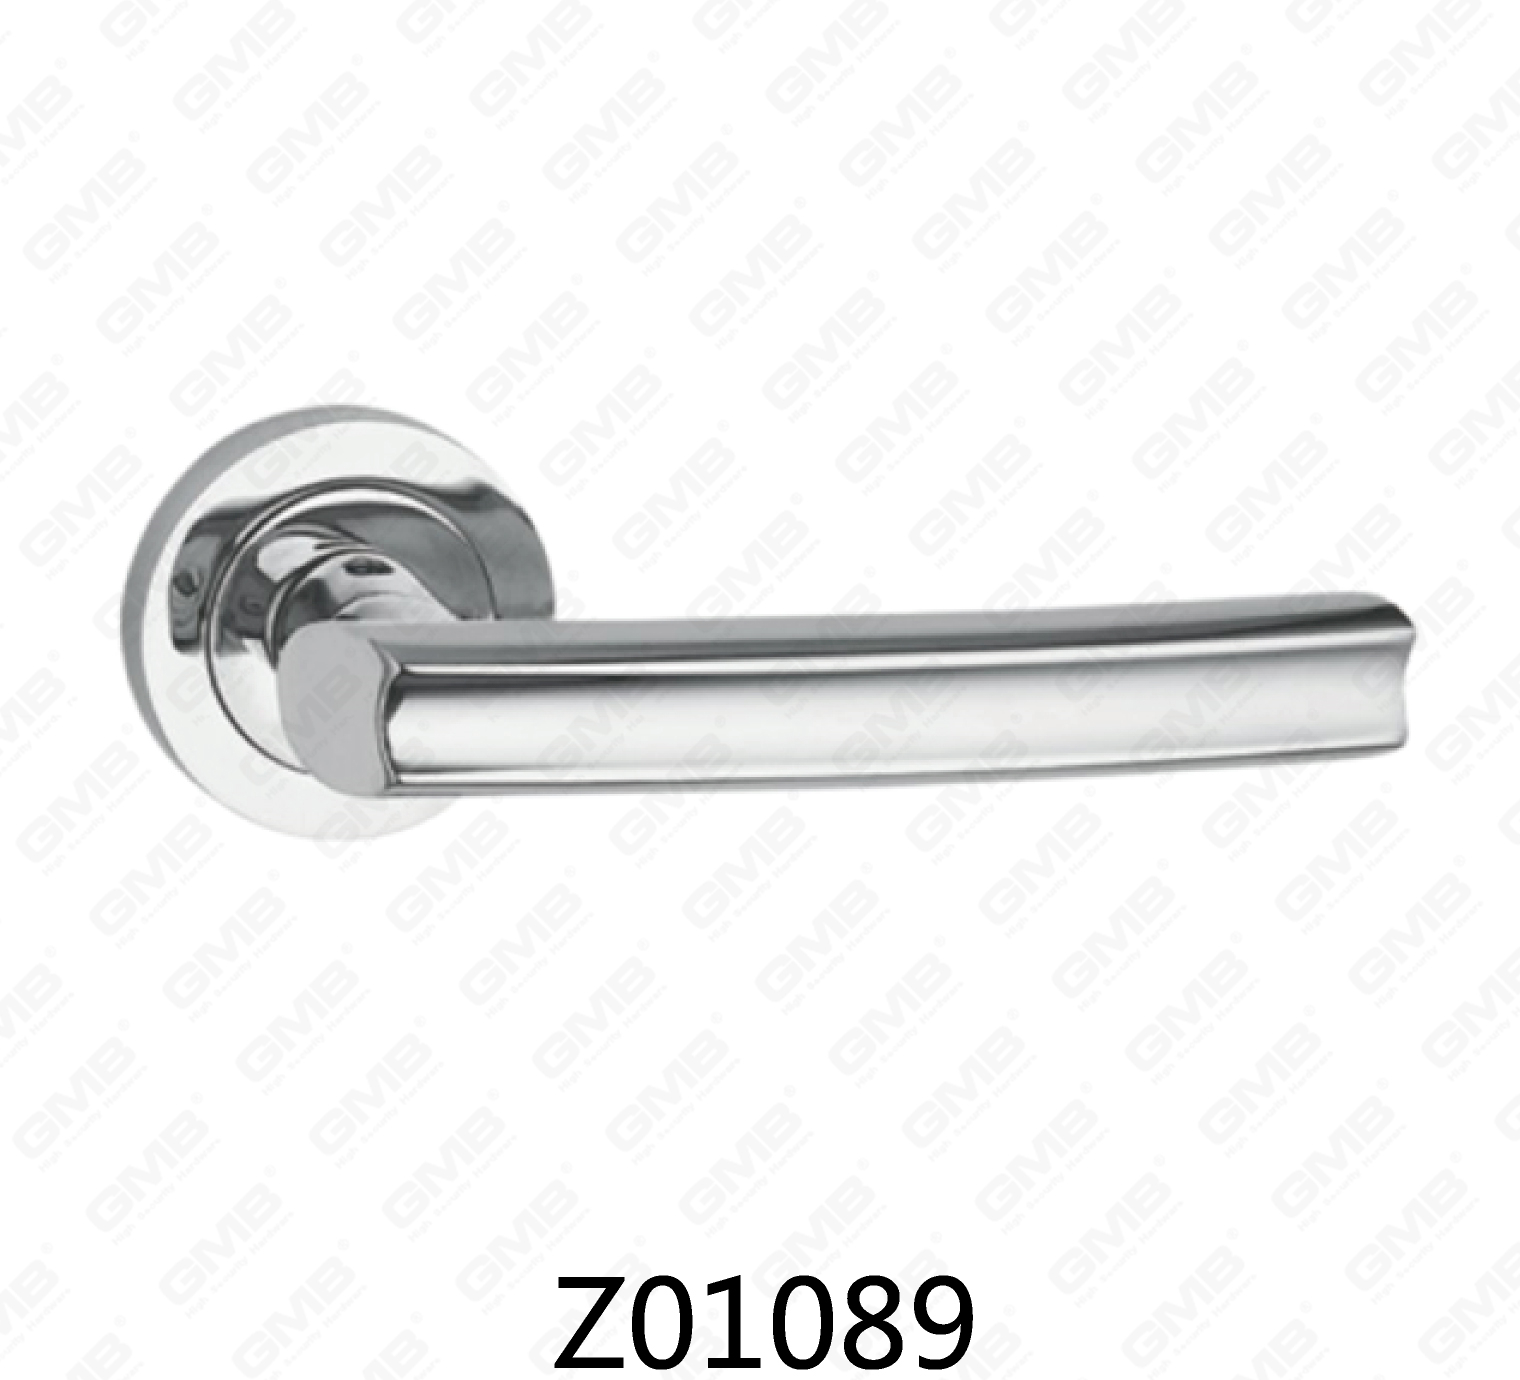 Asa de puerta de roseta de aluminio de aleación de zinc Zamak con roseta redonda (Z01089)